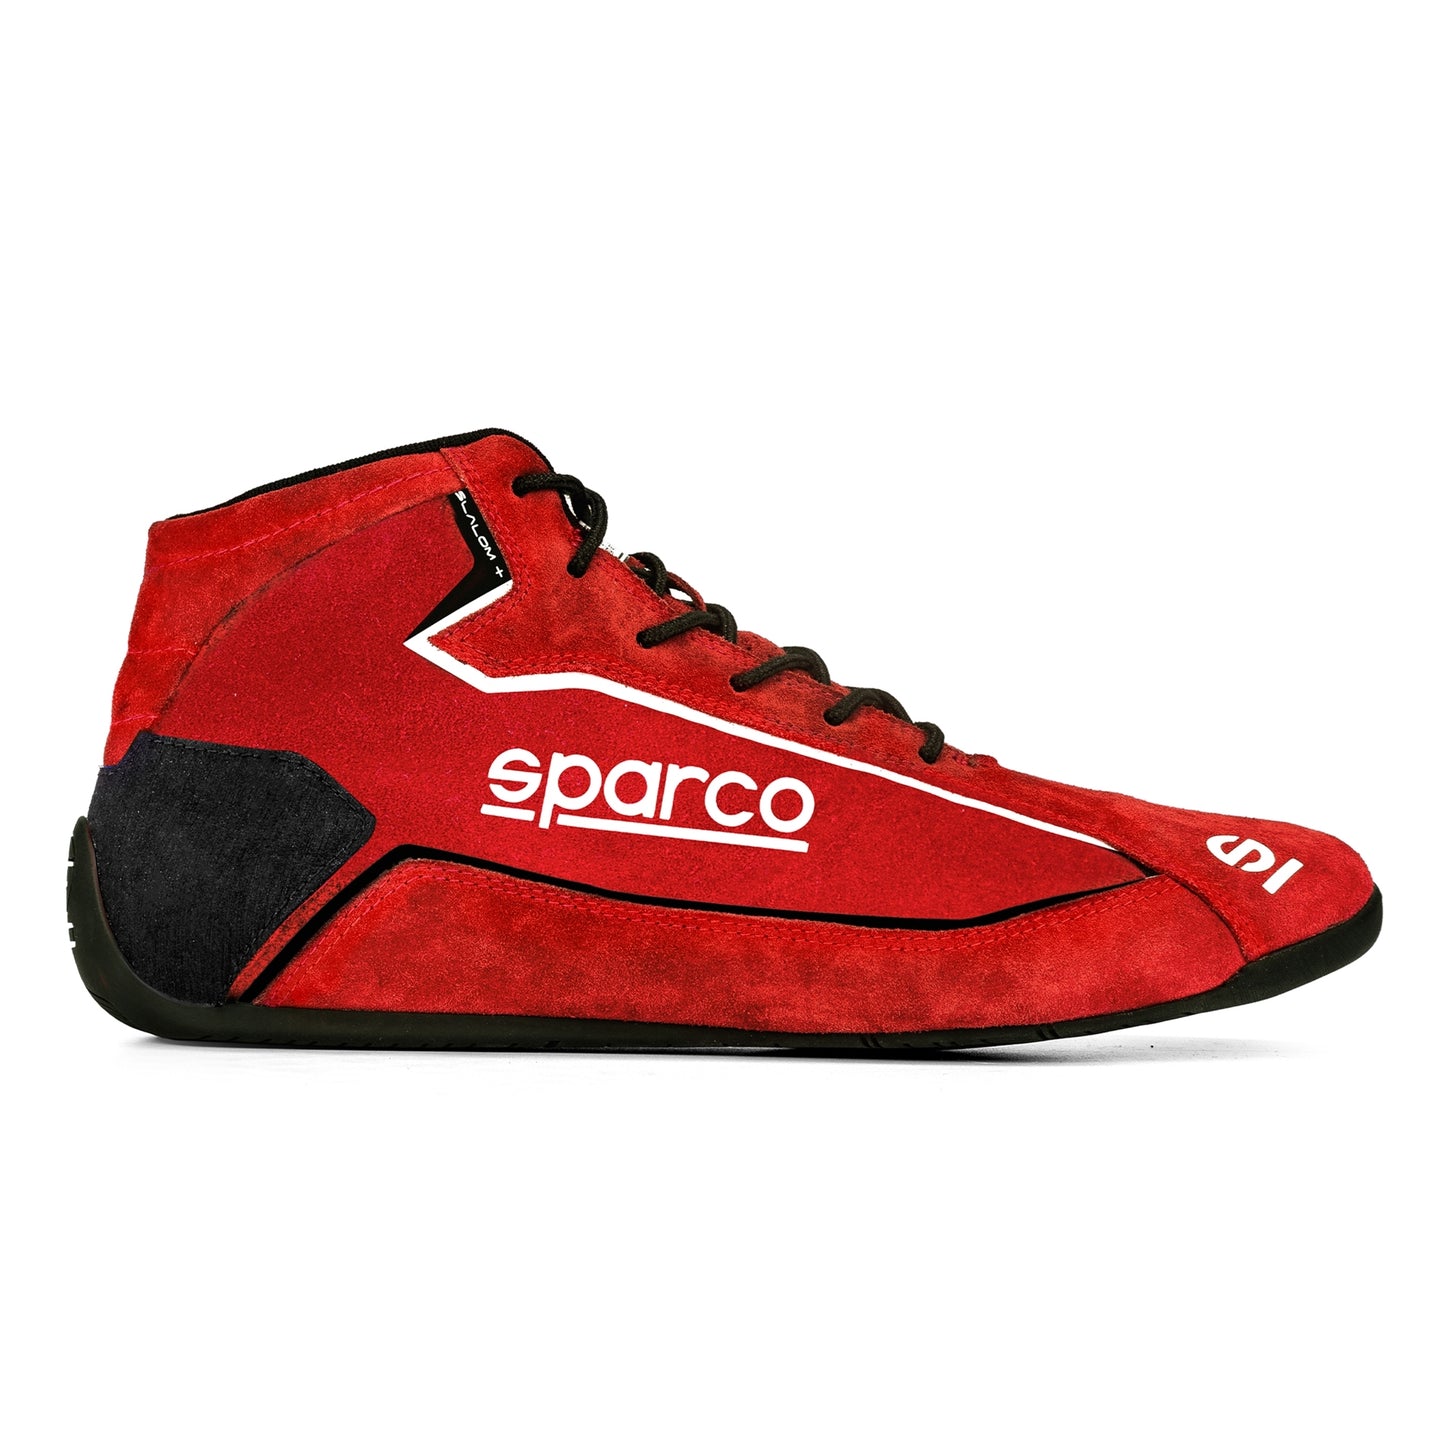 Sparco Slalom + Suede Shoe